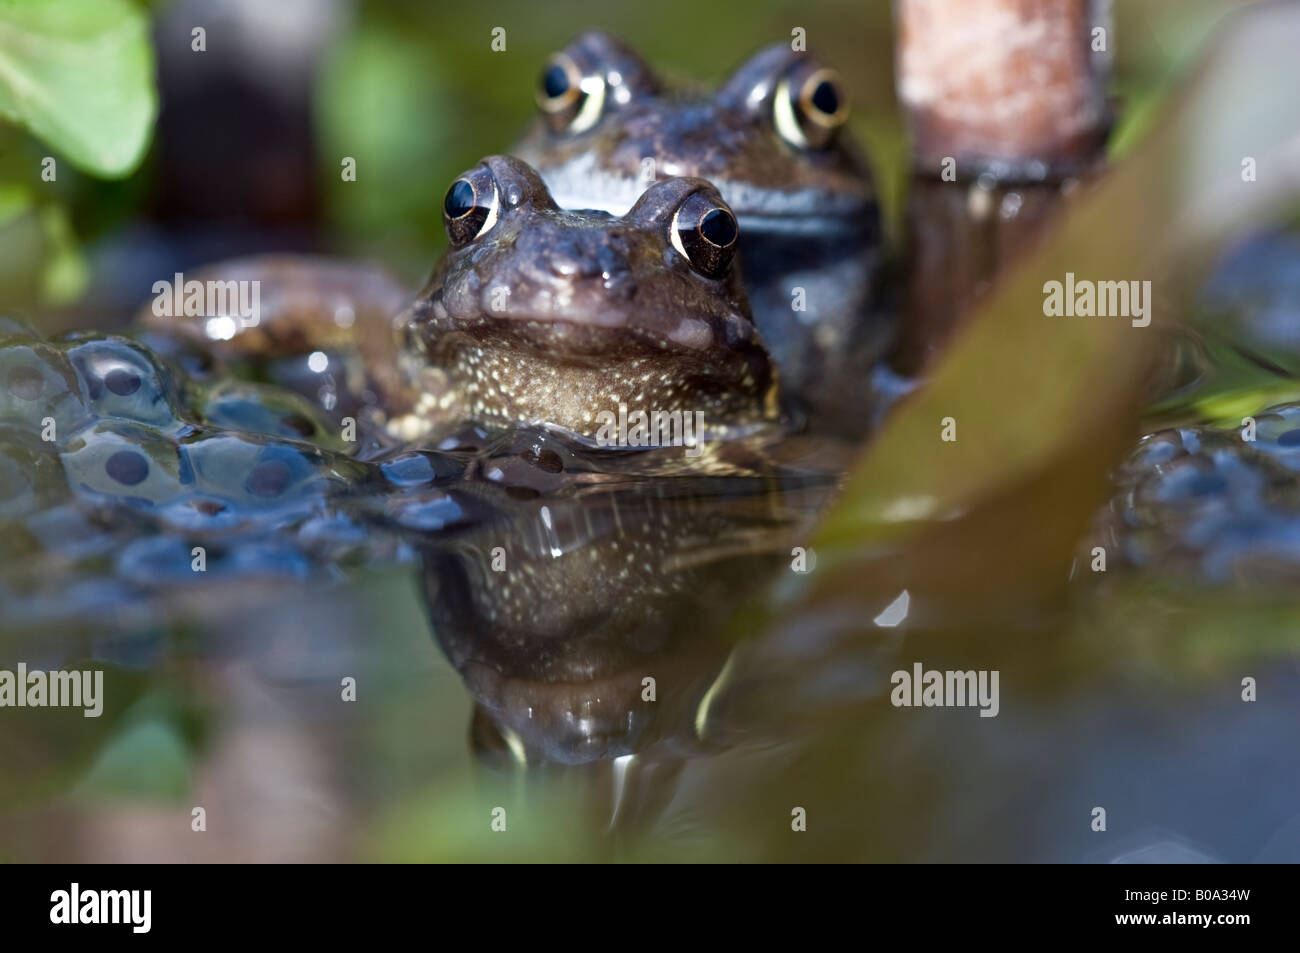 Coppia di rane comuni (rana temporaria) coniugata in un laghetto in giardino. Foto Stock